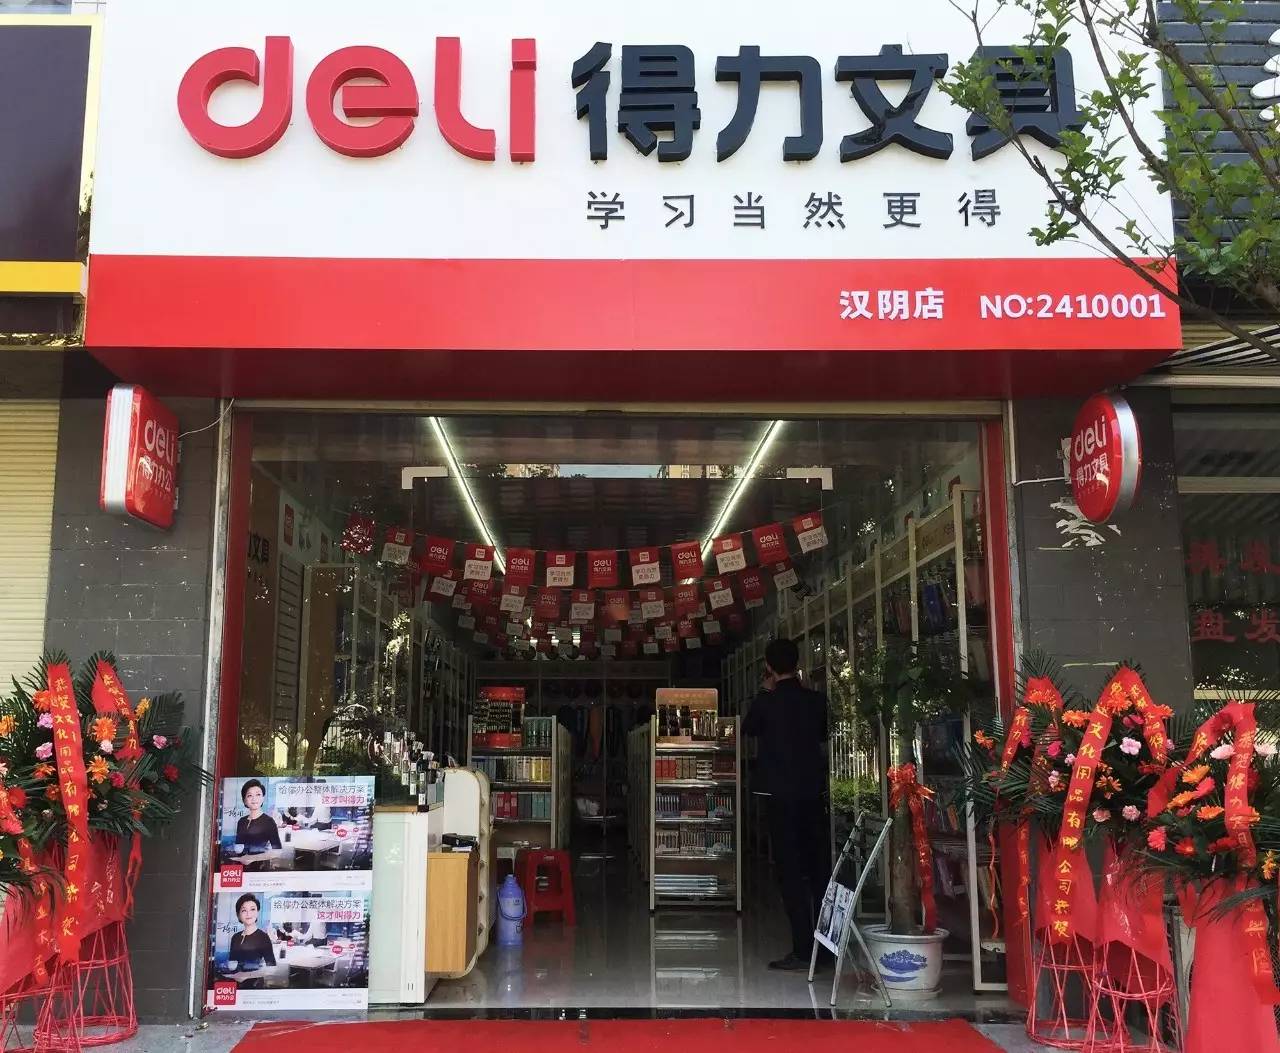 有一天,我们在西安安康的汉阴县开了一家得力文具学生加盟店